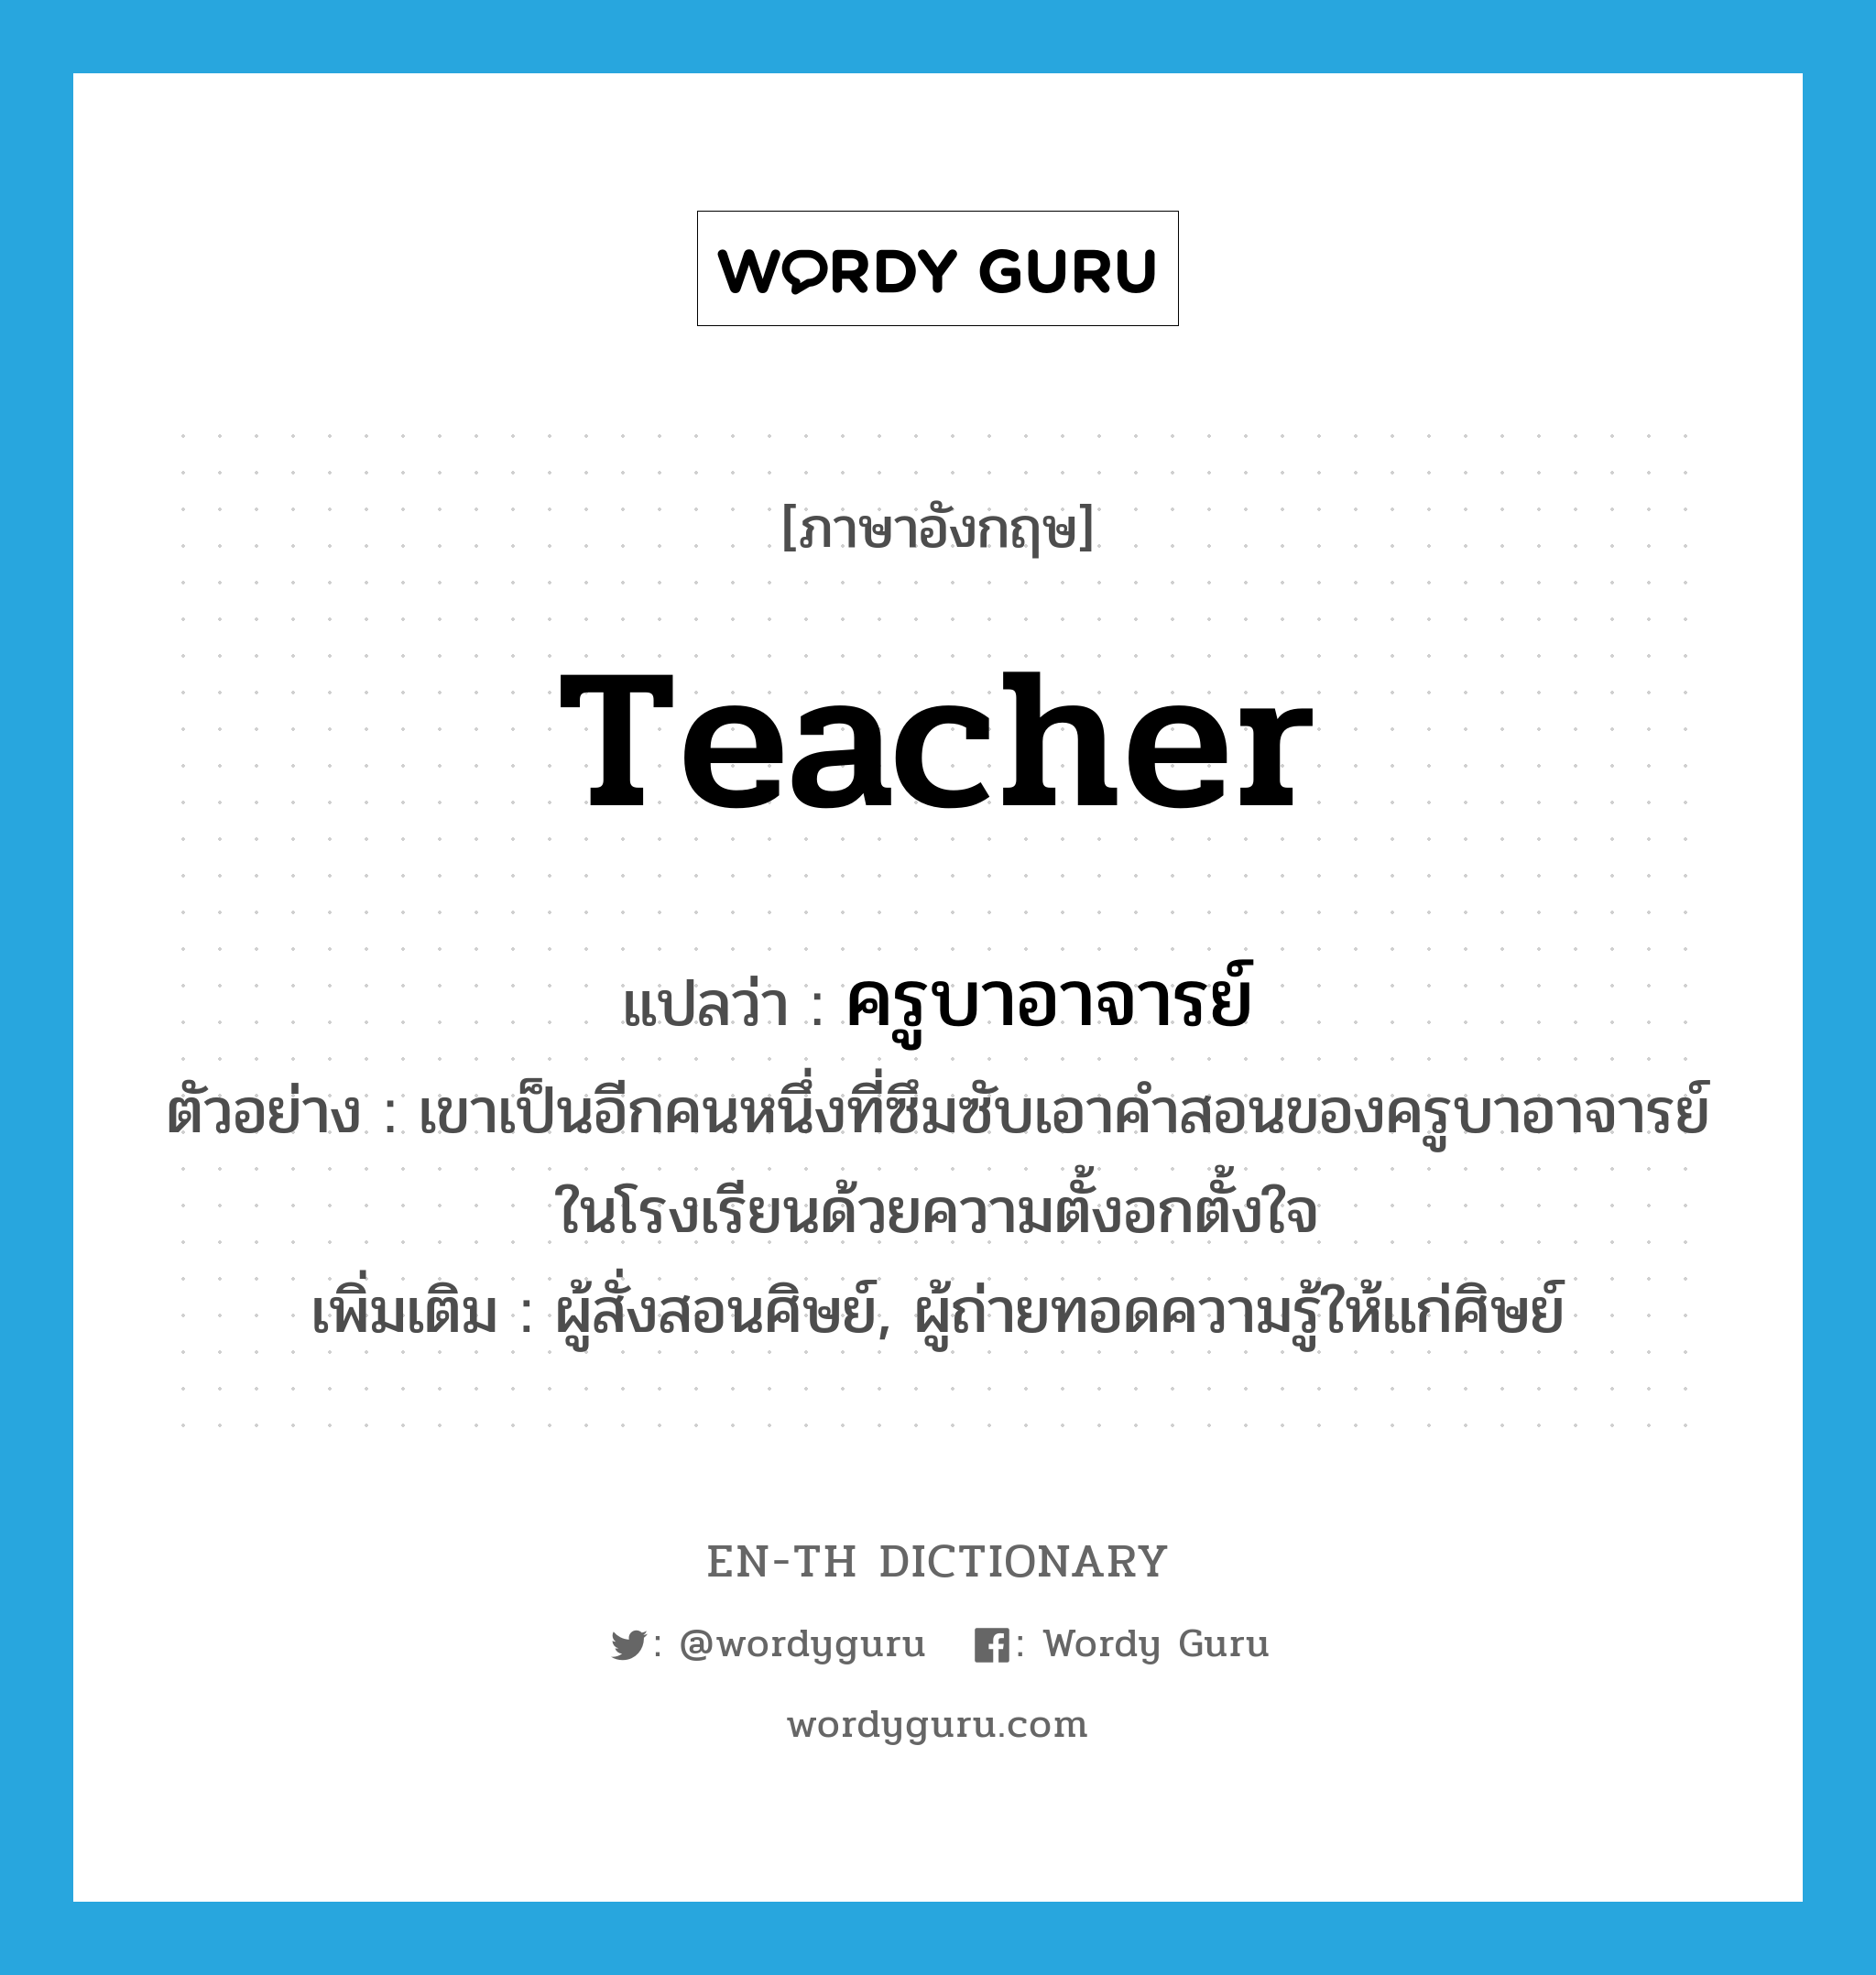 ครูบาอาจารย์ ภาษาอังกฤษ?, คำศัพท์ภาษาอังกฤษ ครูบาอาจารย์ แปลว่า teacher ประเภท N ตัวอย่าง เขาเป็นอีกคนหนึ่งที่ซึมซับเอาคำสอนของครูบาอาจารย์ในโรงเรียนด้วยความตั้งอกตั้งใจ เพิ่มเติม ผู้สั่งสอนศิษย์, ผู้ถ่ายทอดความรู้ให้แก่ศิษย์ หมวด N